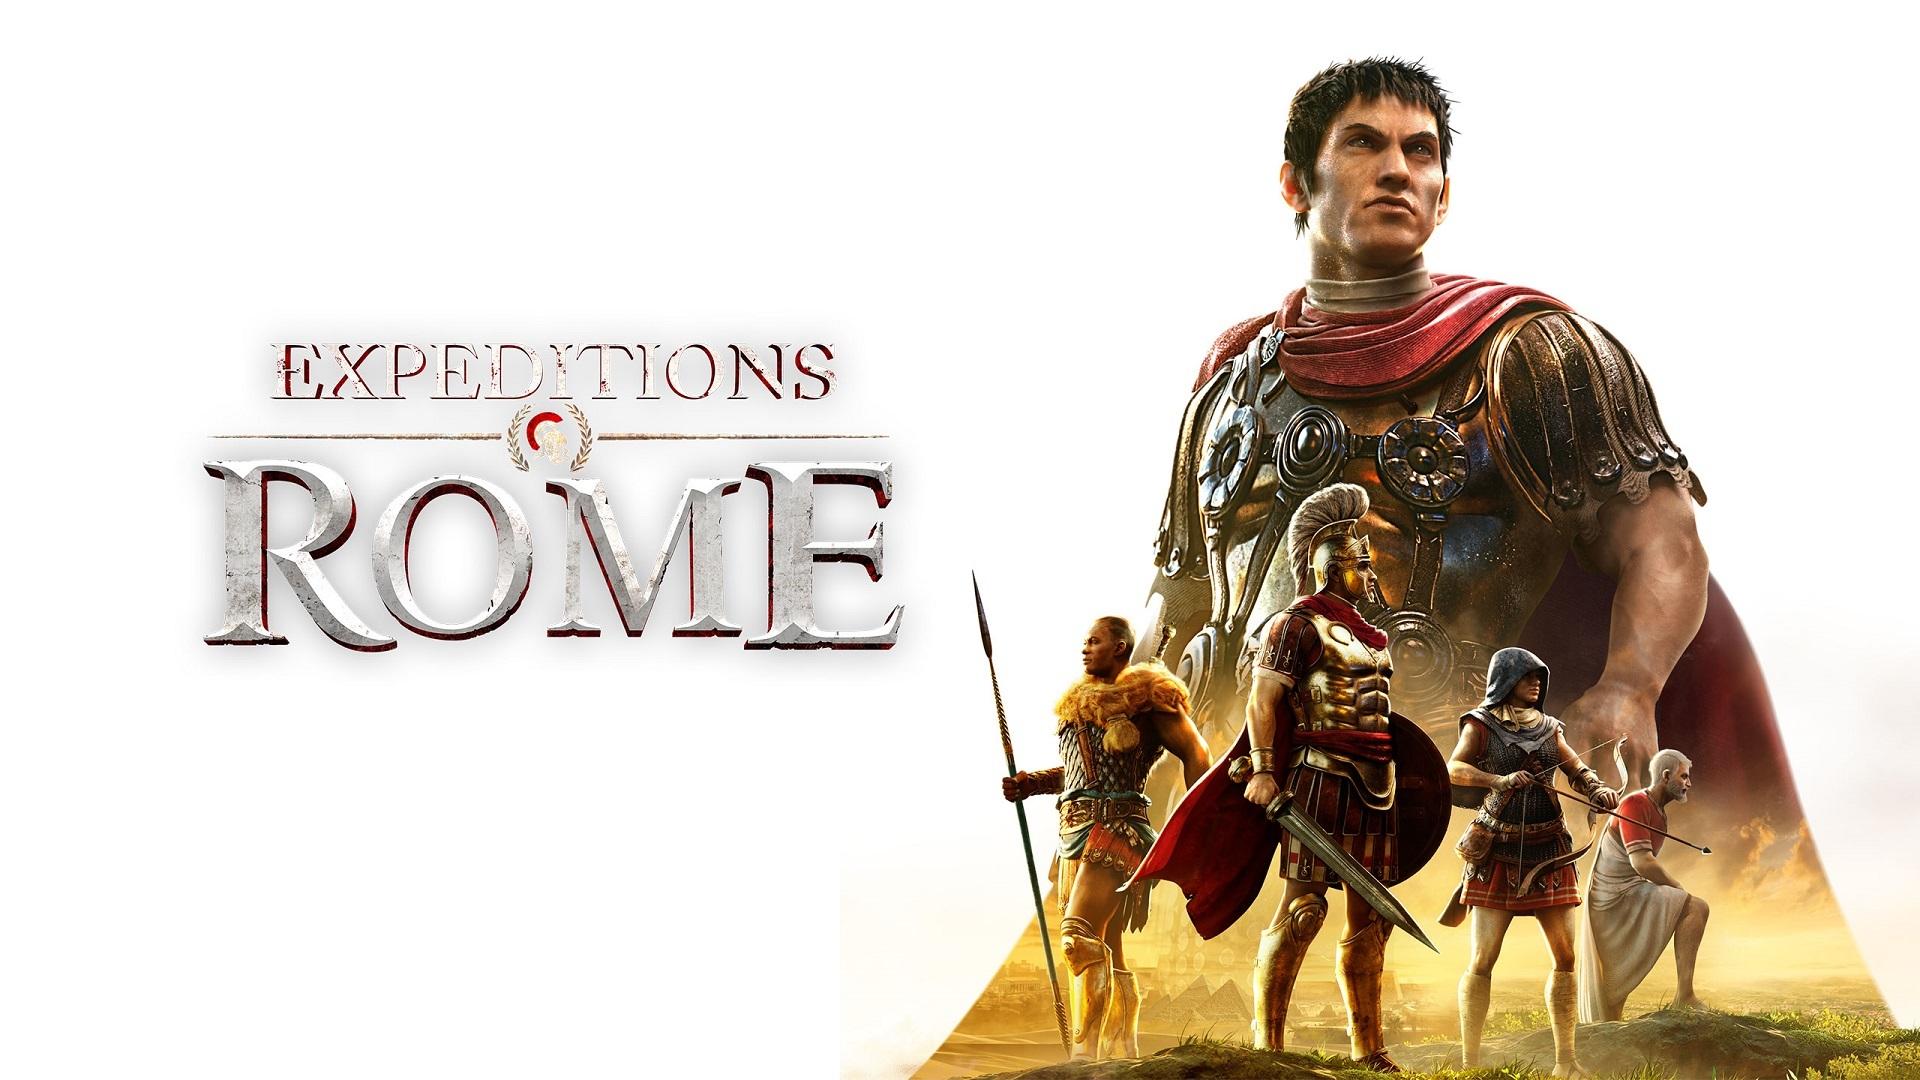 Expeditions: Rome – RPG stratégia dnes vyšla.